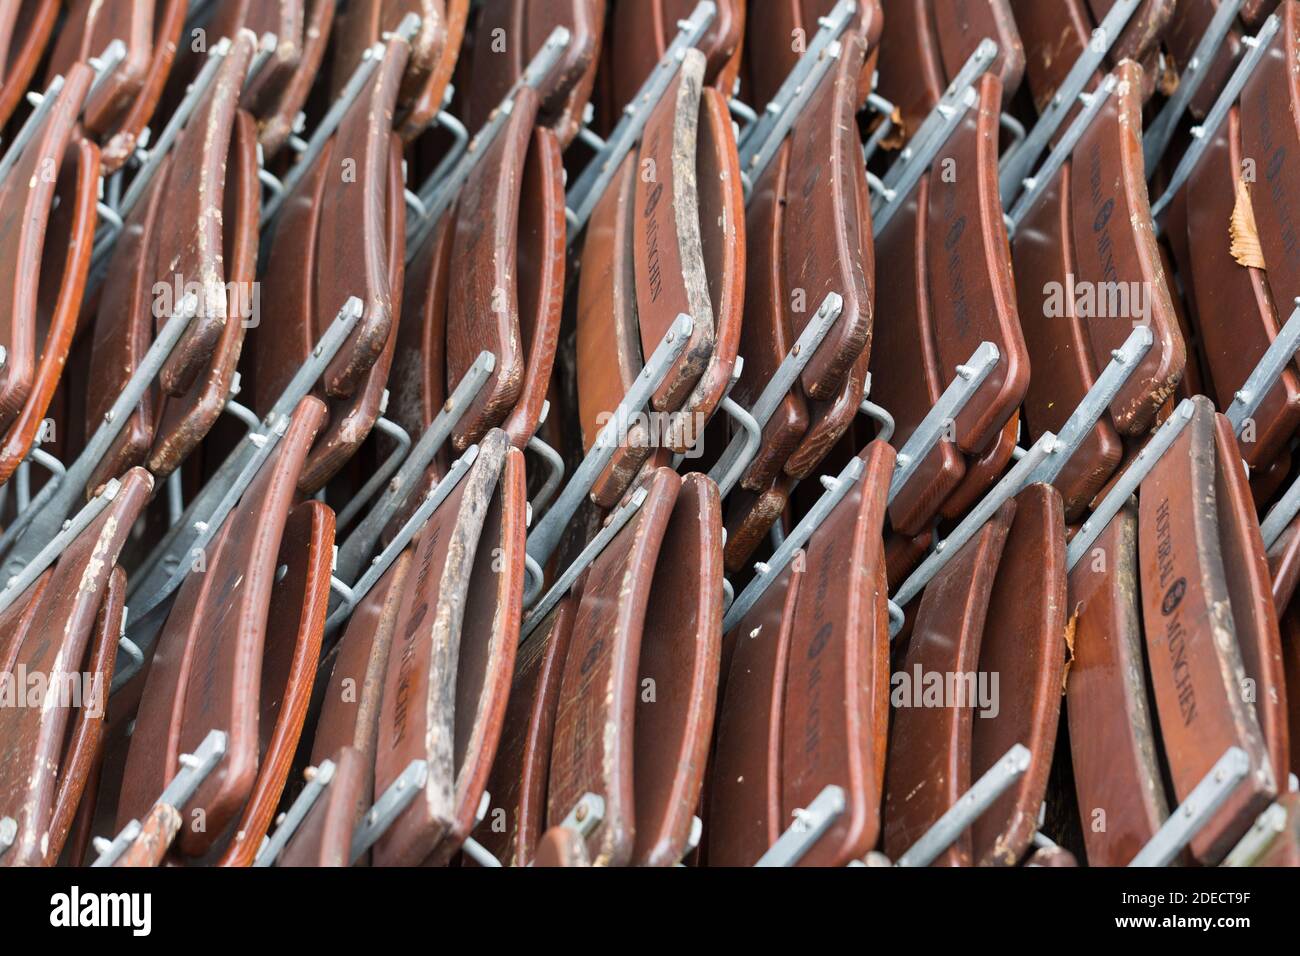 Munich, Bavière / Allemagne - 12 novembre 2020 : gros plan des chaises de jardin à bière pliées. Capturé lors du confinement de novembre (Covid-19 / coronavirus). Banque D'Images